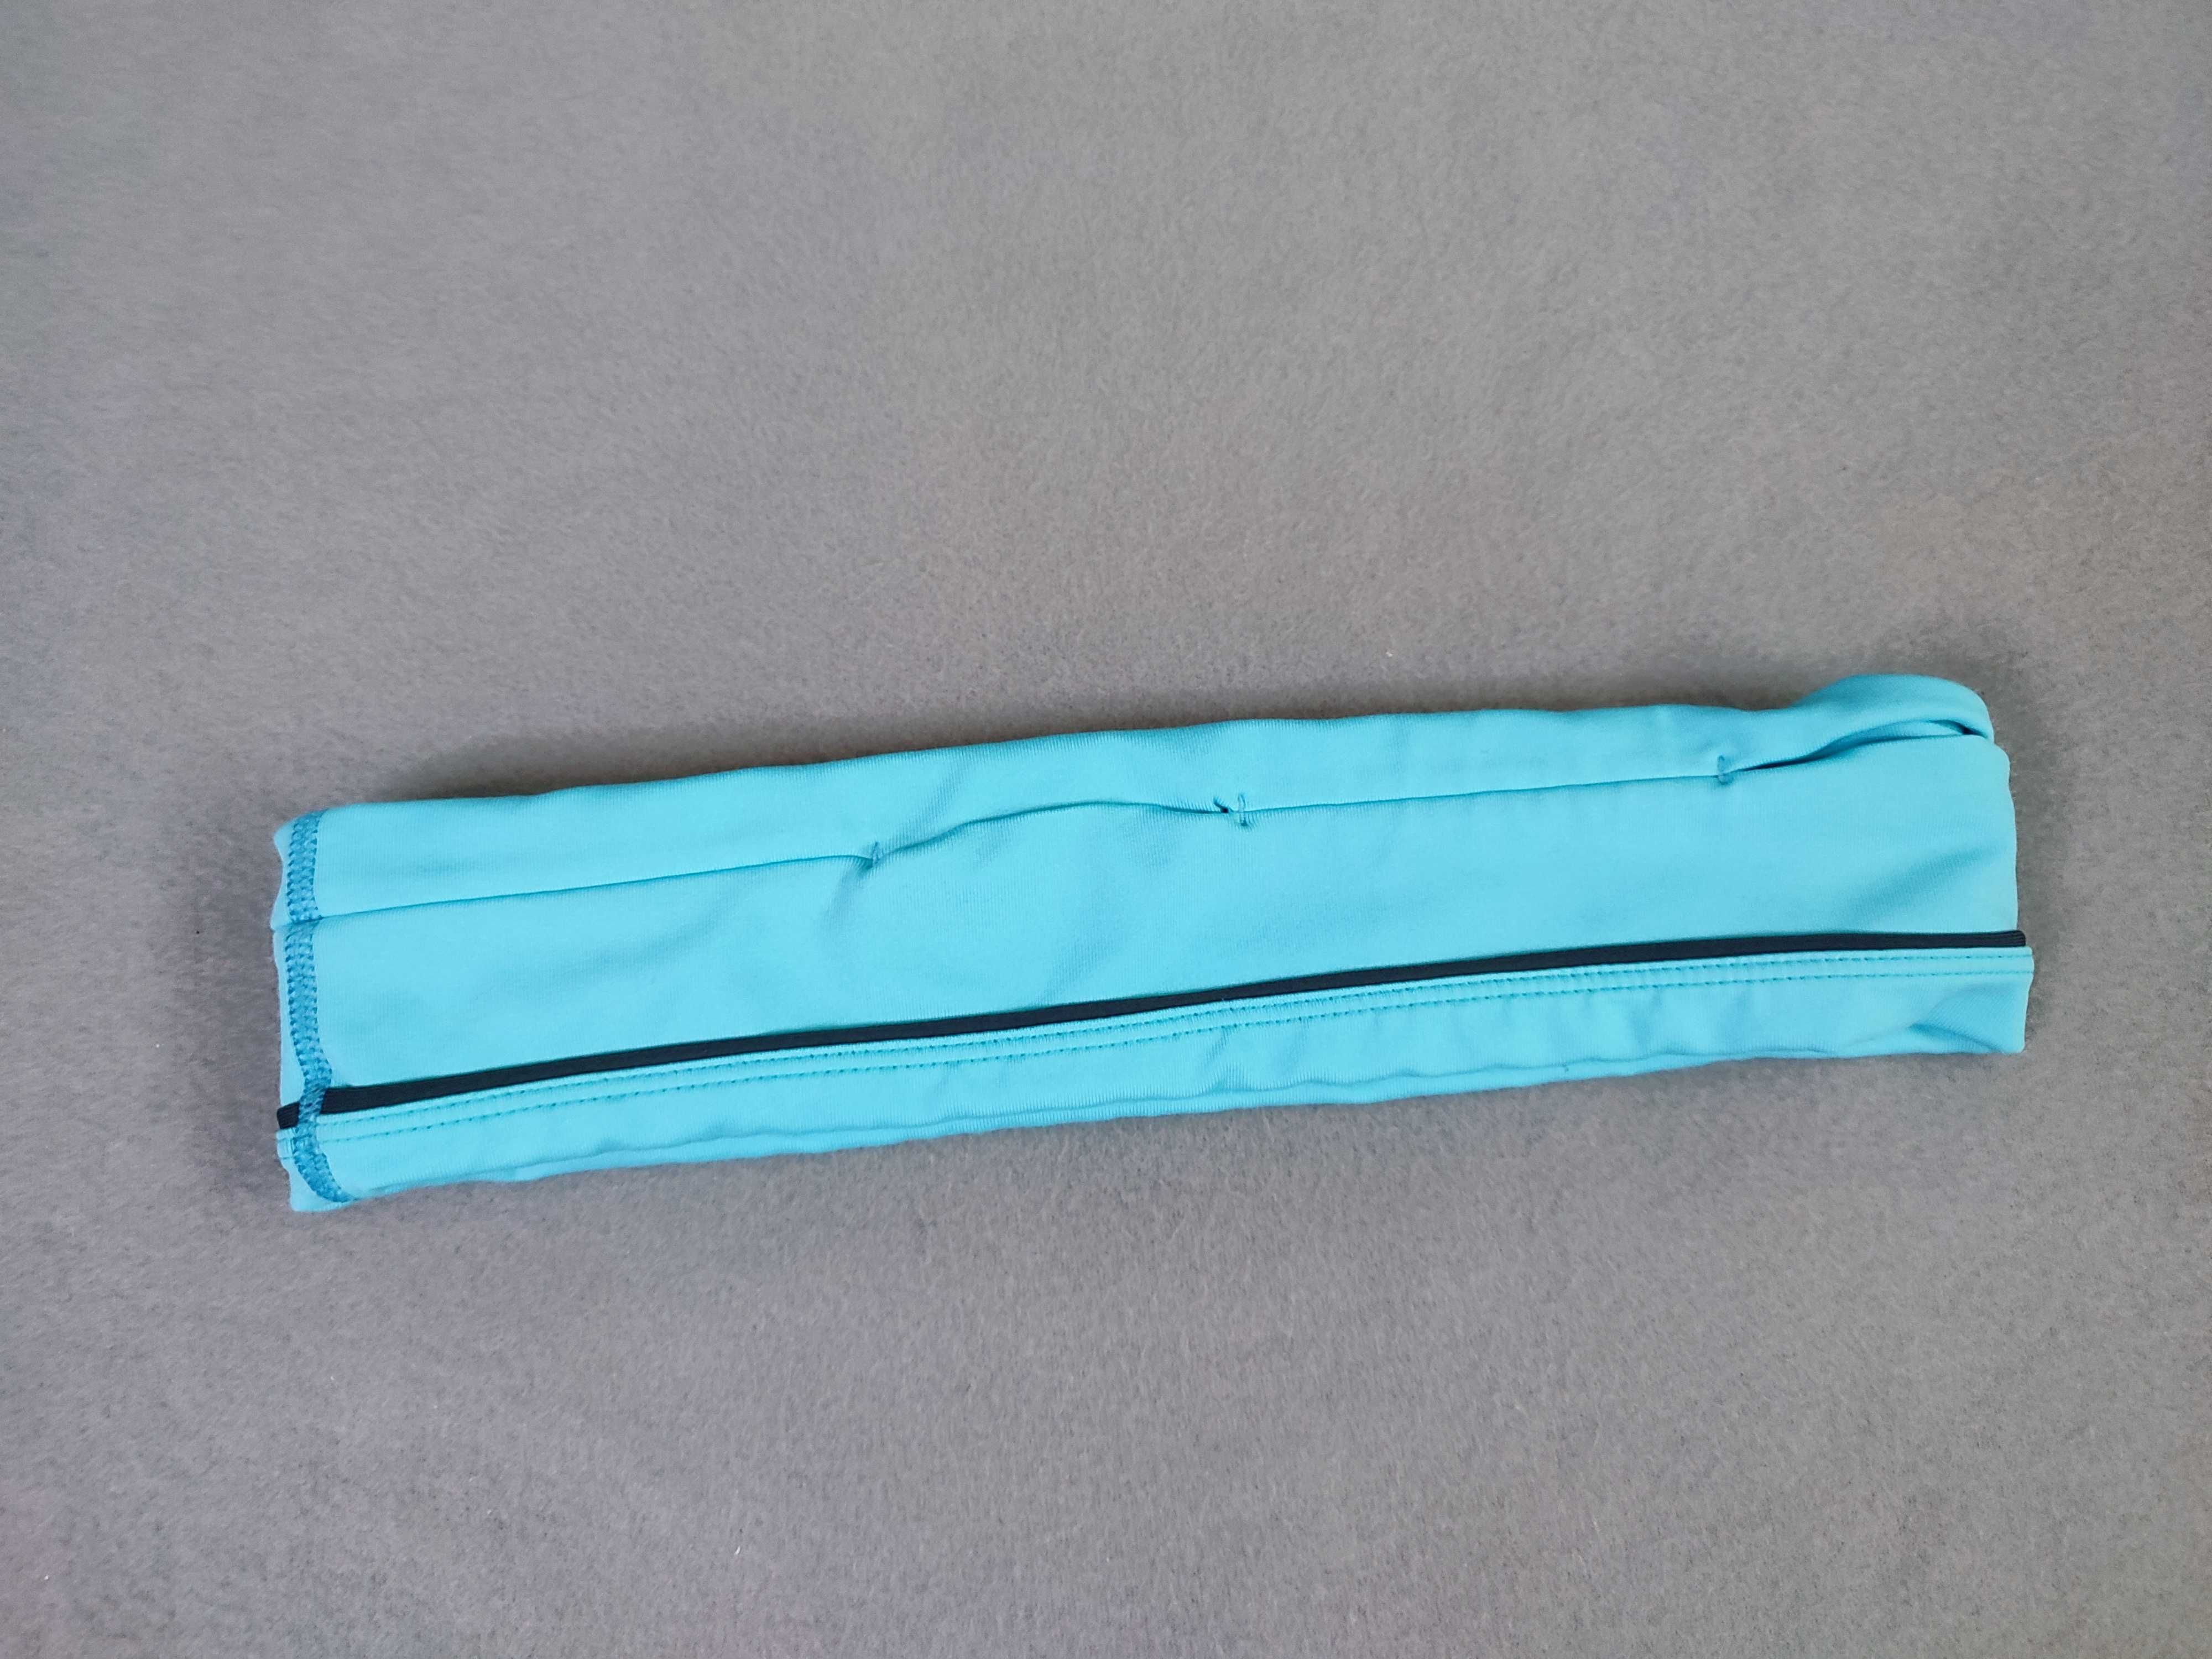 Пояс для бега, поясная сумка Flip Belt, голубой